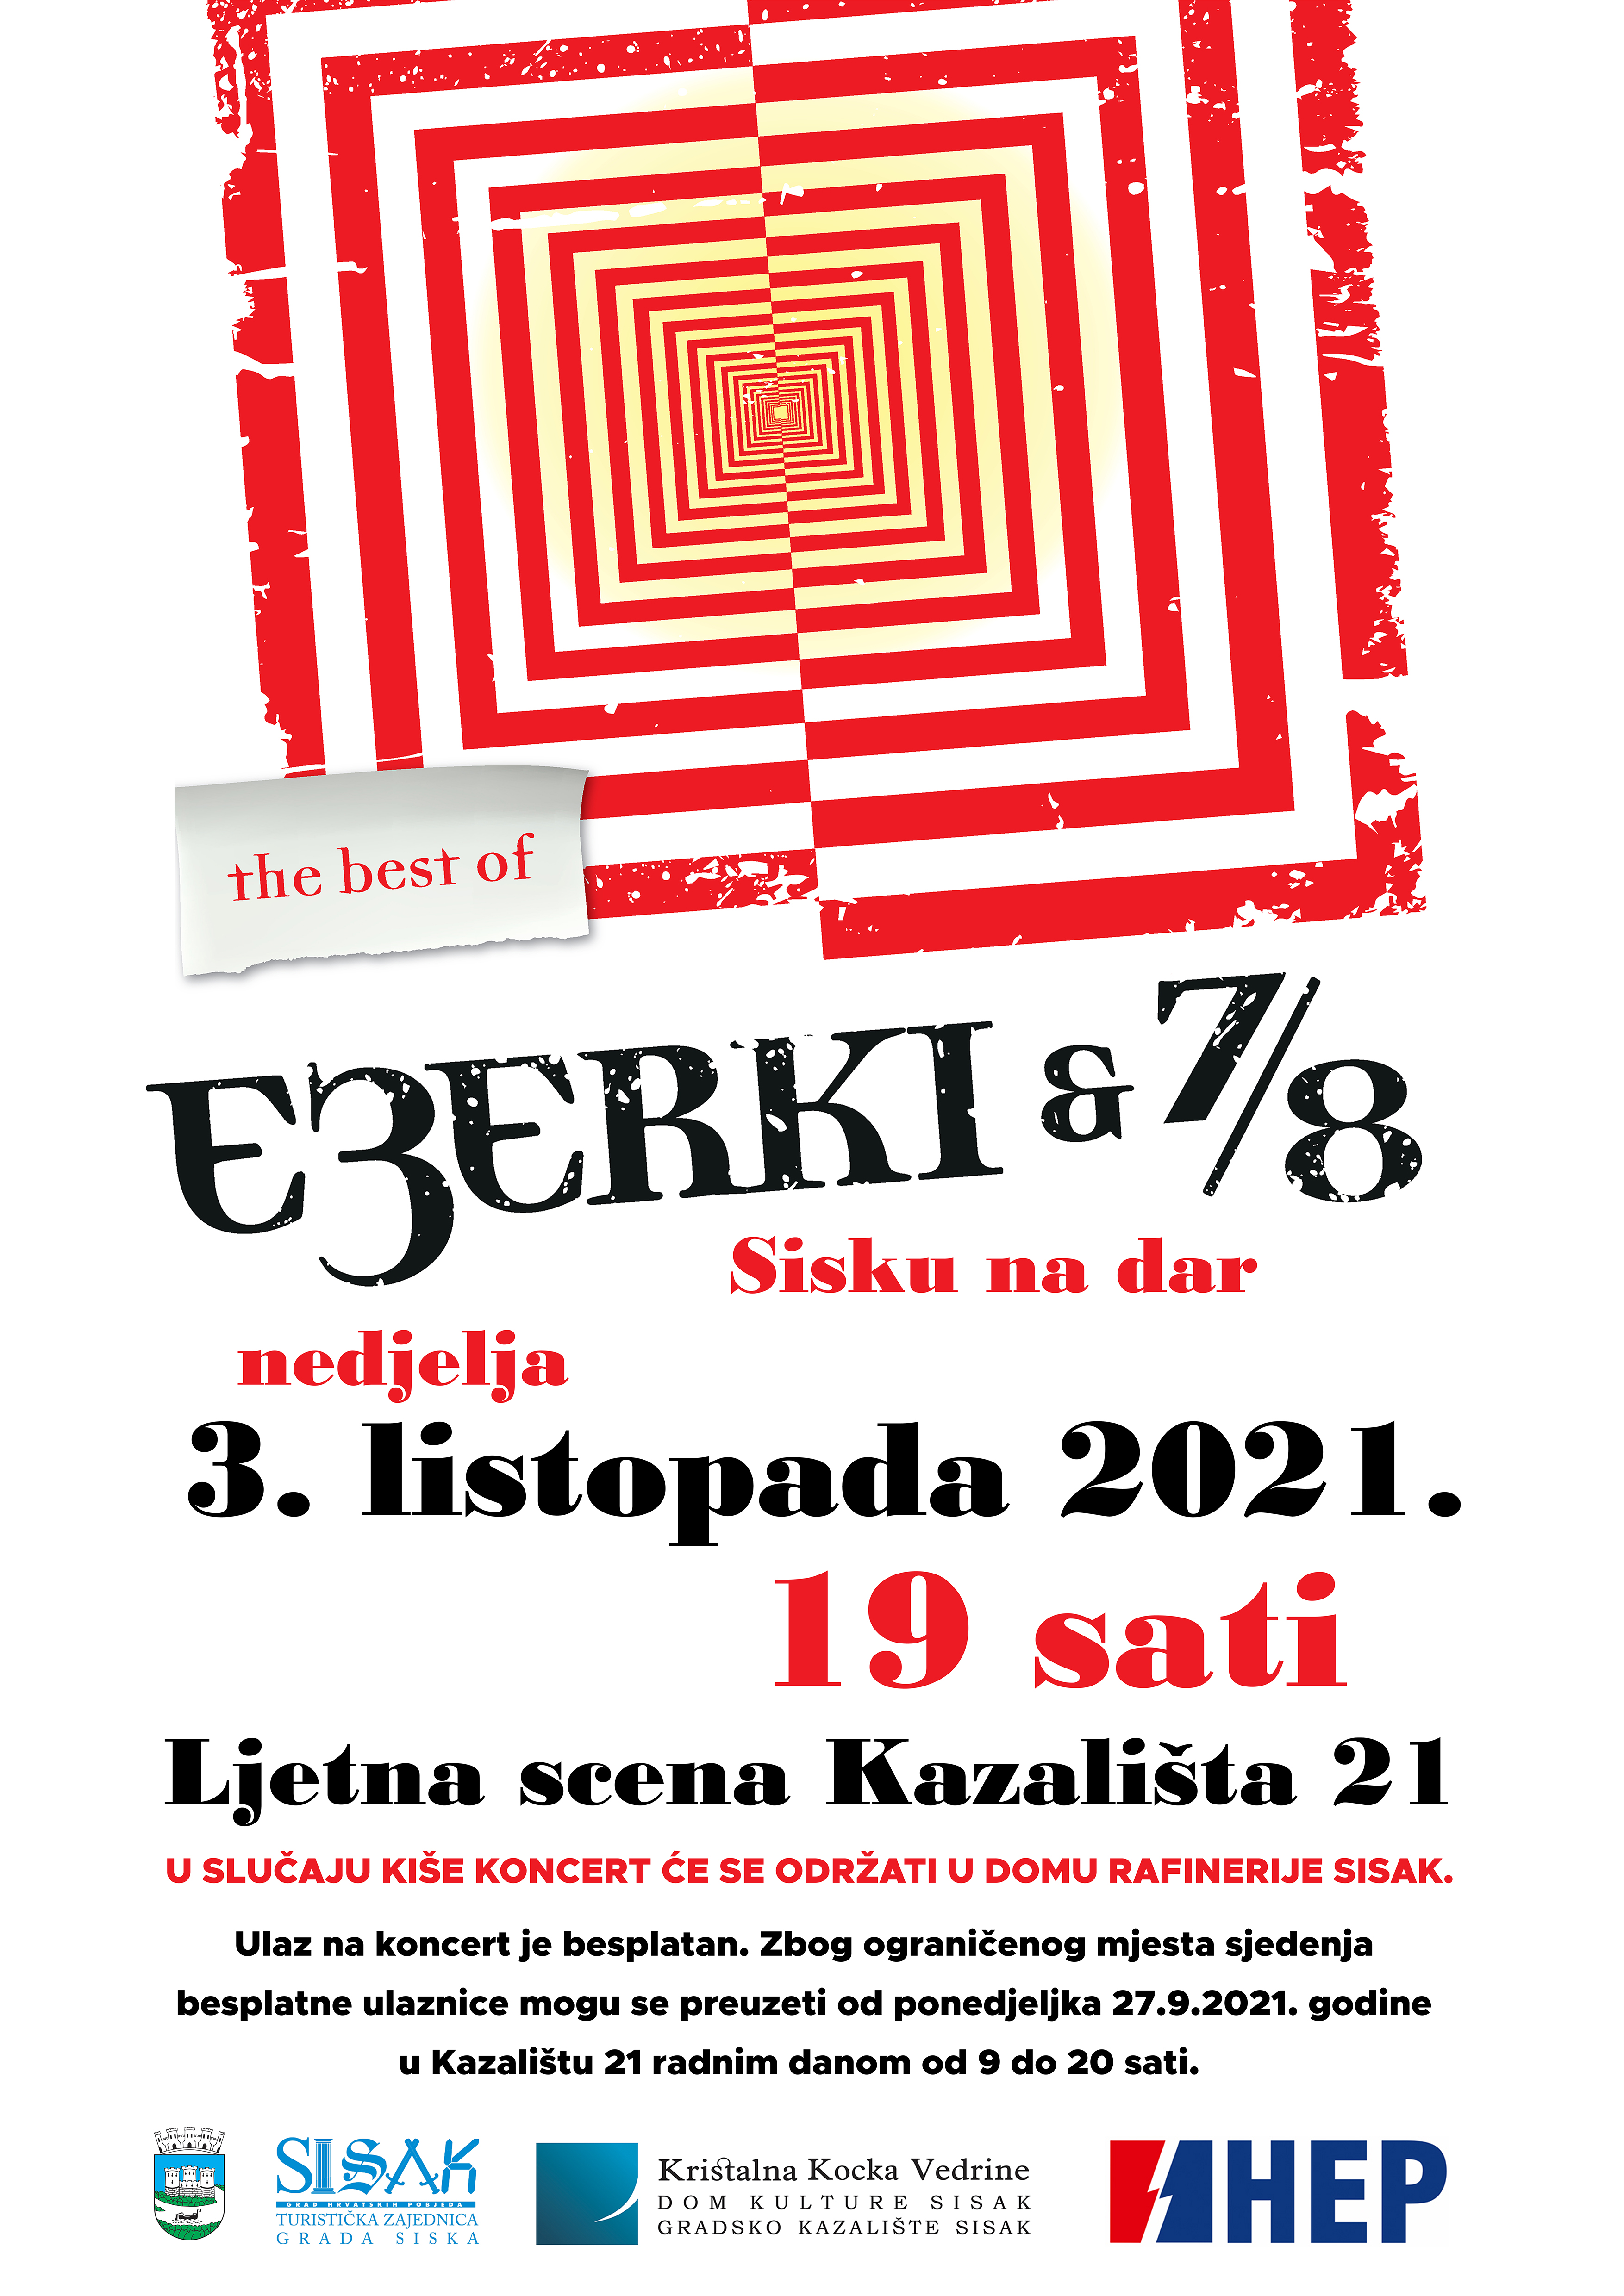 You are currently viewing “Sisku na dar” koncert etno skupine Ezerki & 7/8